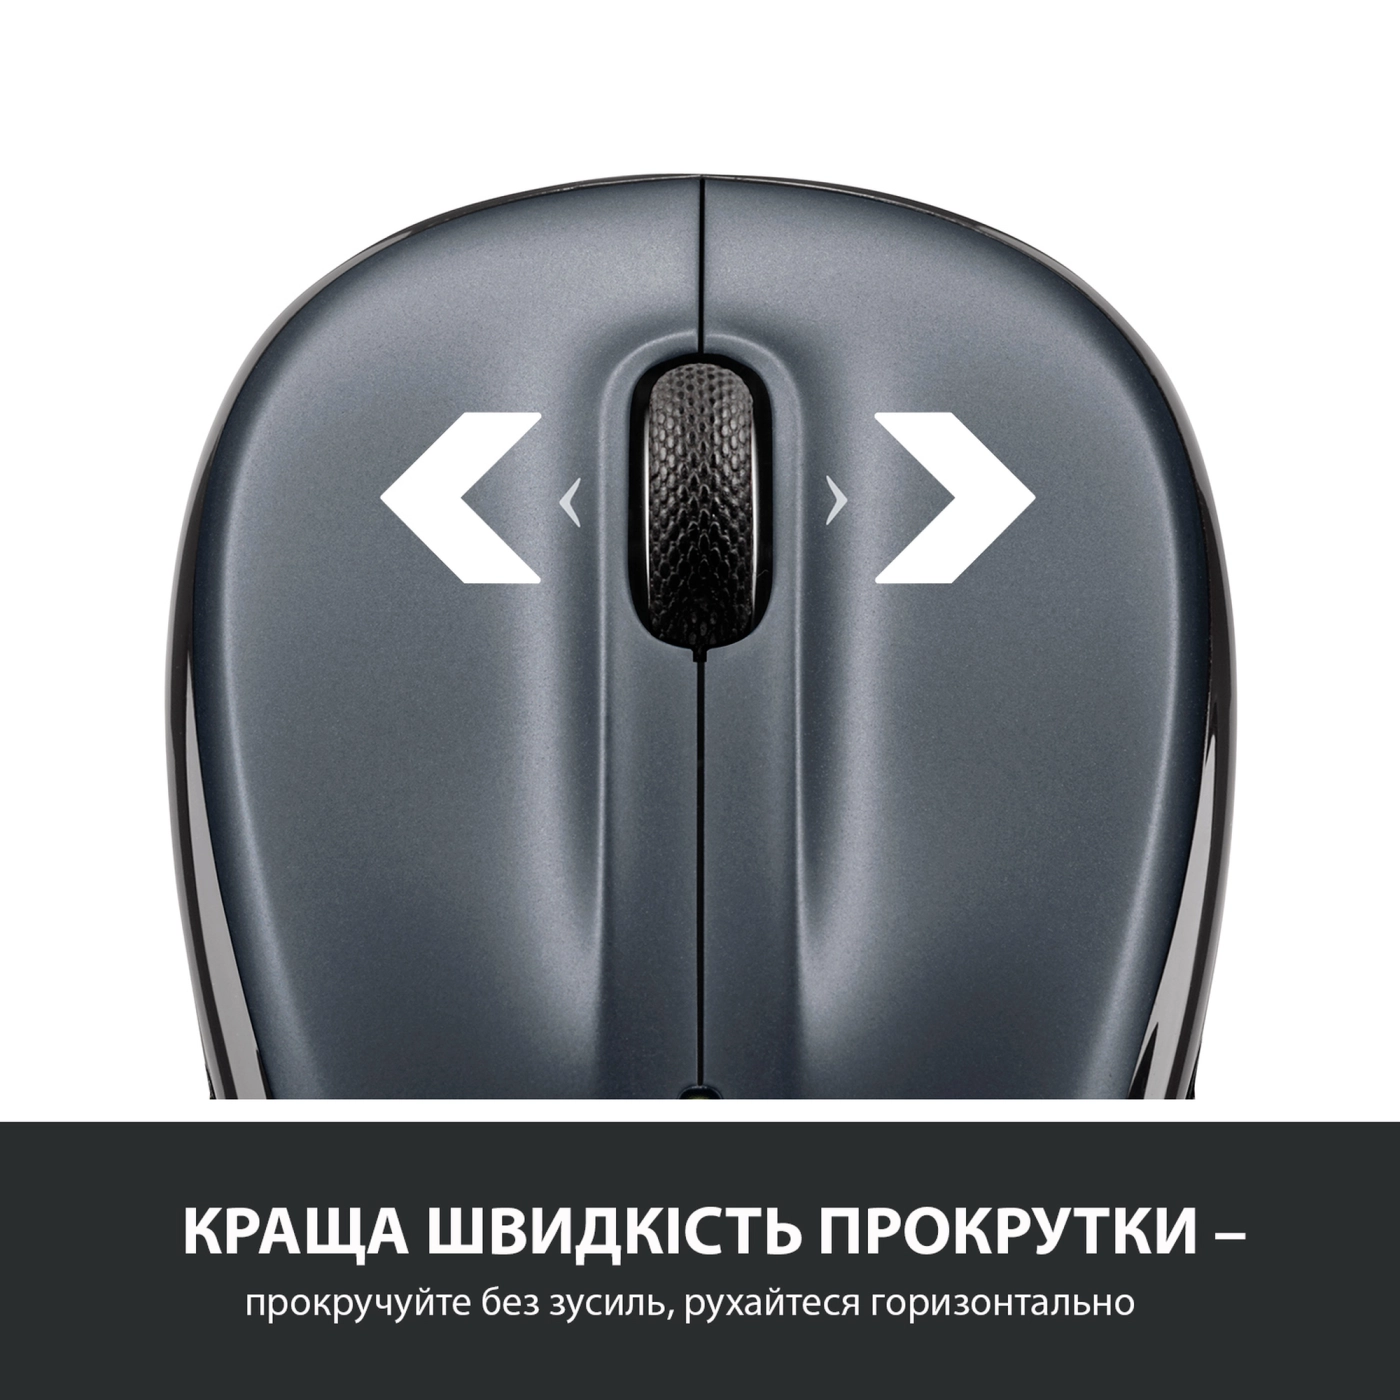 Купить Мышь Logitech Wireless Mouse M325s dark-silver 2.4GHZ (910-006812) - фото 3